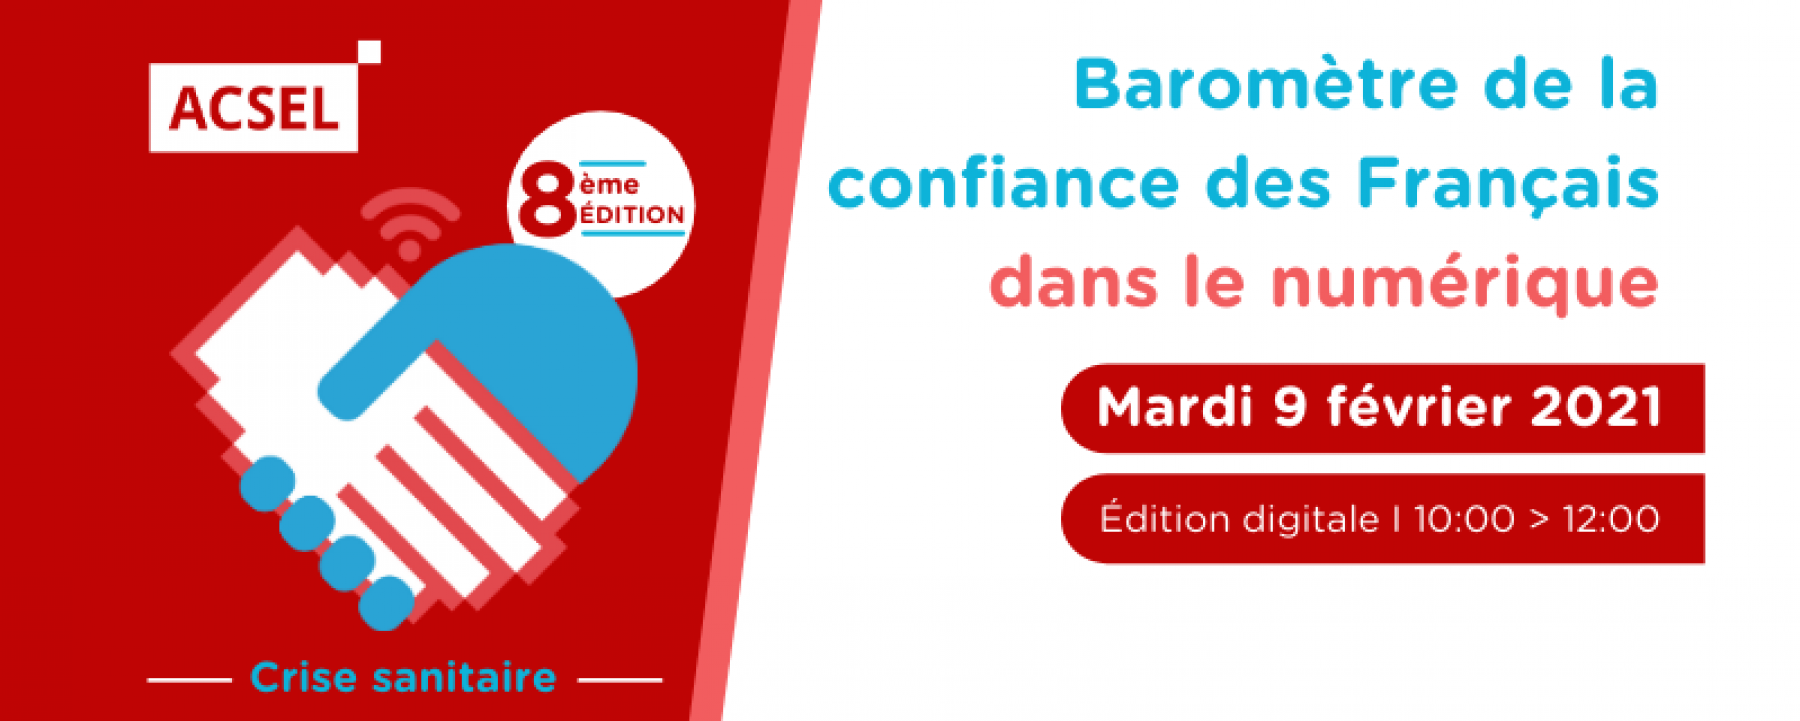 Baromètre 2021 de la confiance des Français dans le numérique, un événement organisé par ACSEL le 9 février